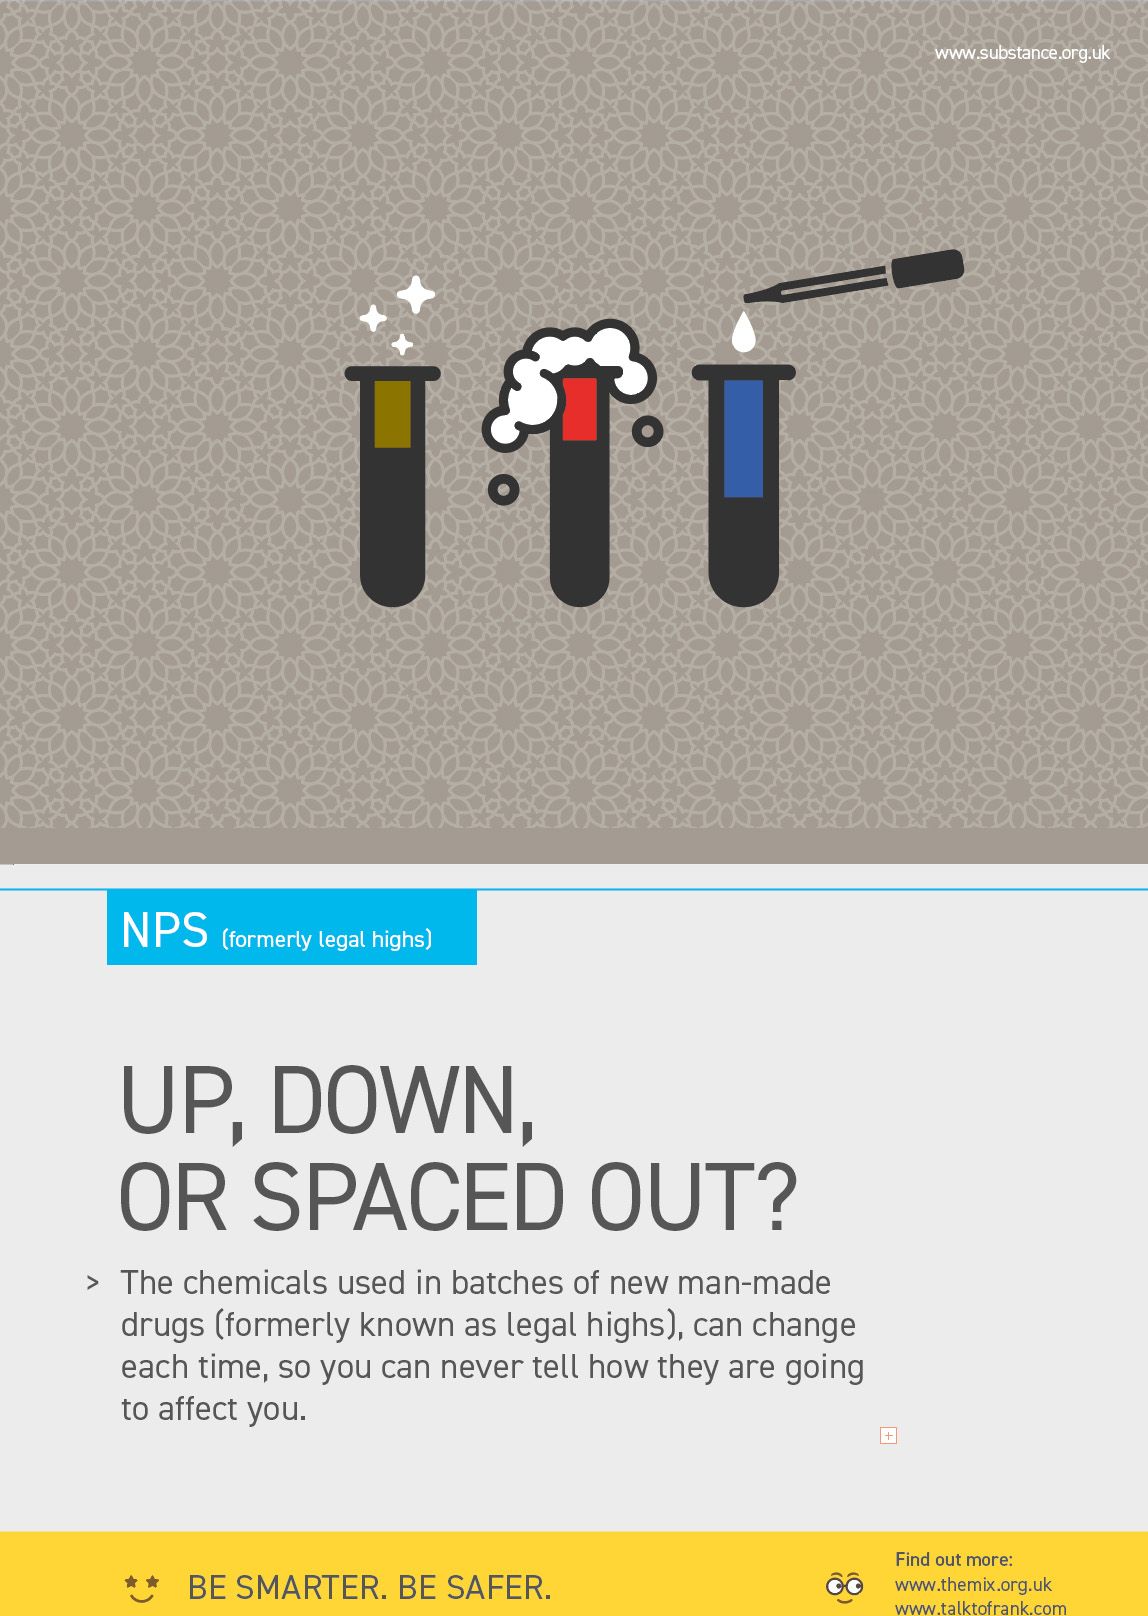 NPS legal highs drug information poster